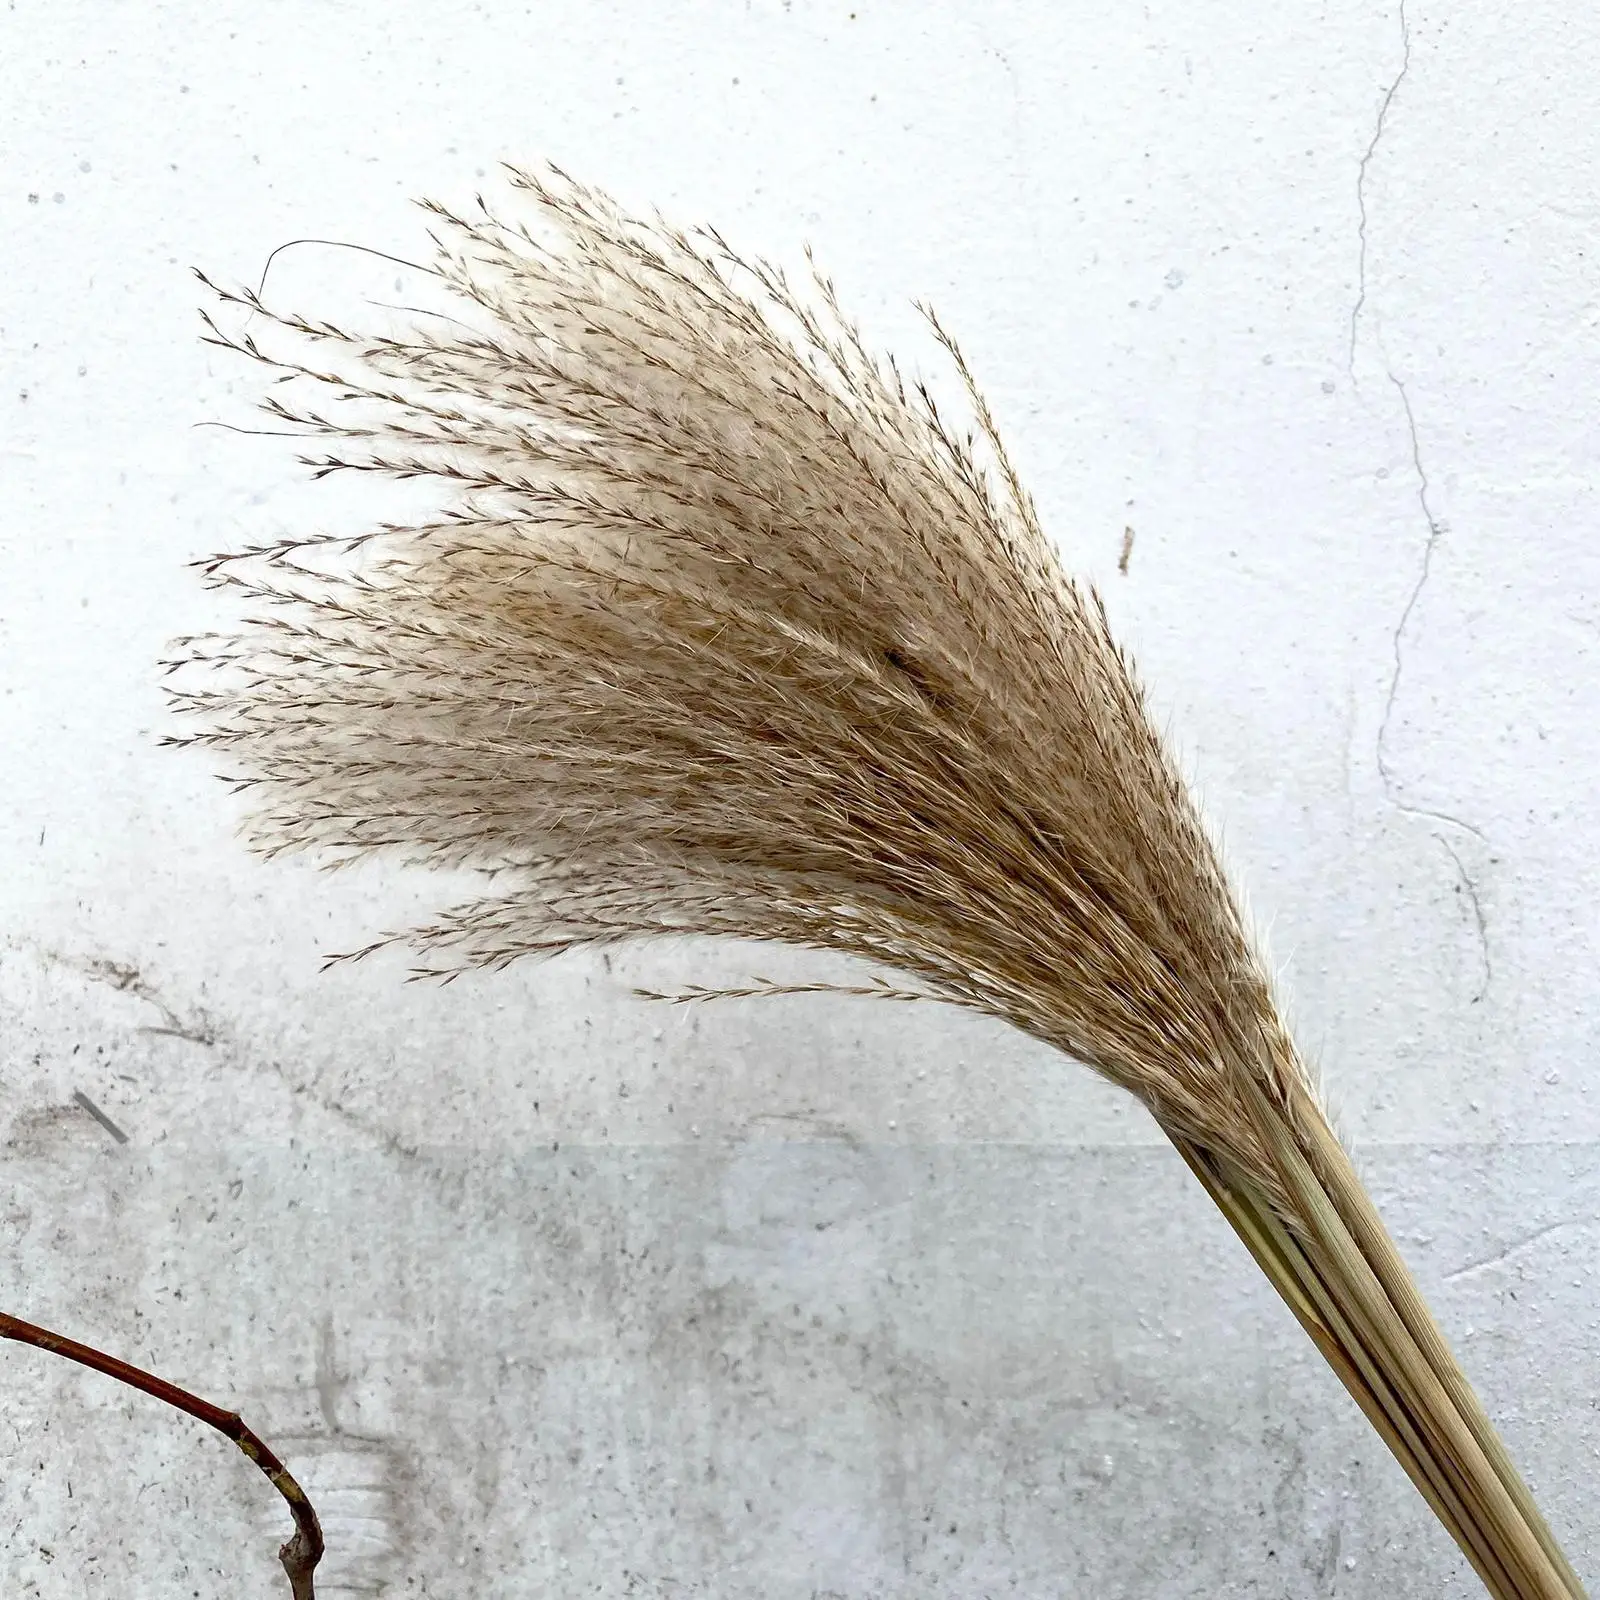 100 Pieces Rustic Dried Pampas Grass Floral Arrangements for Festival Table Decor